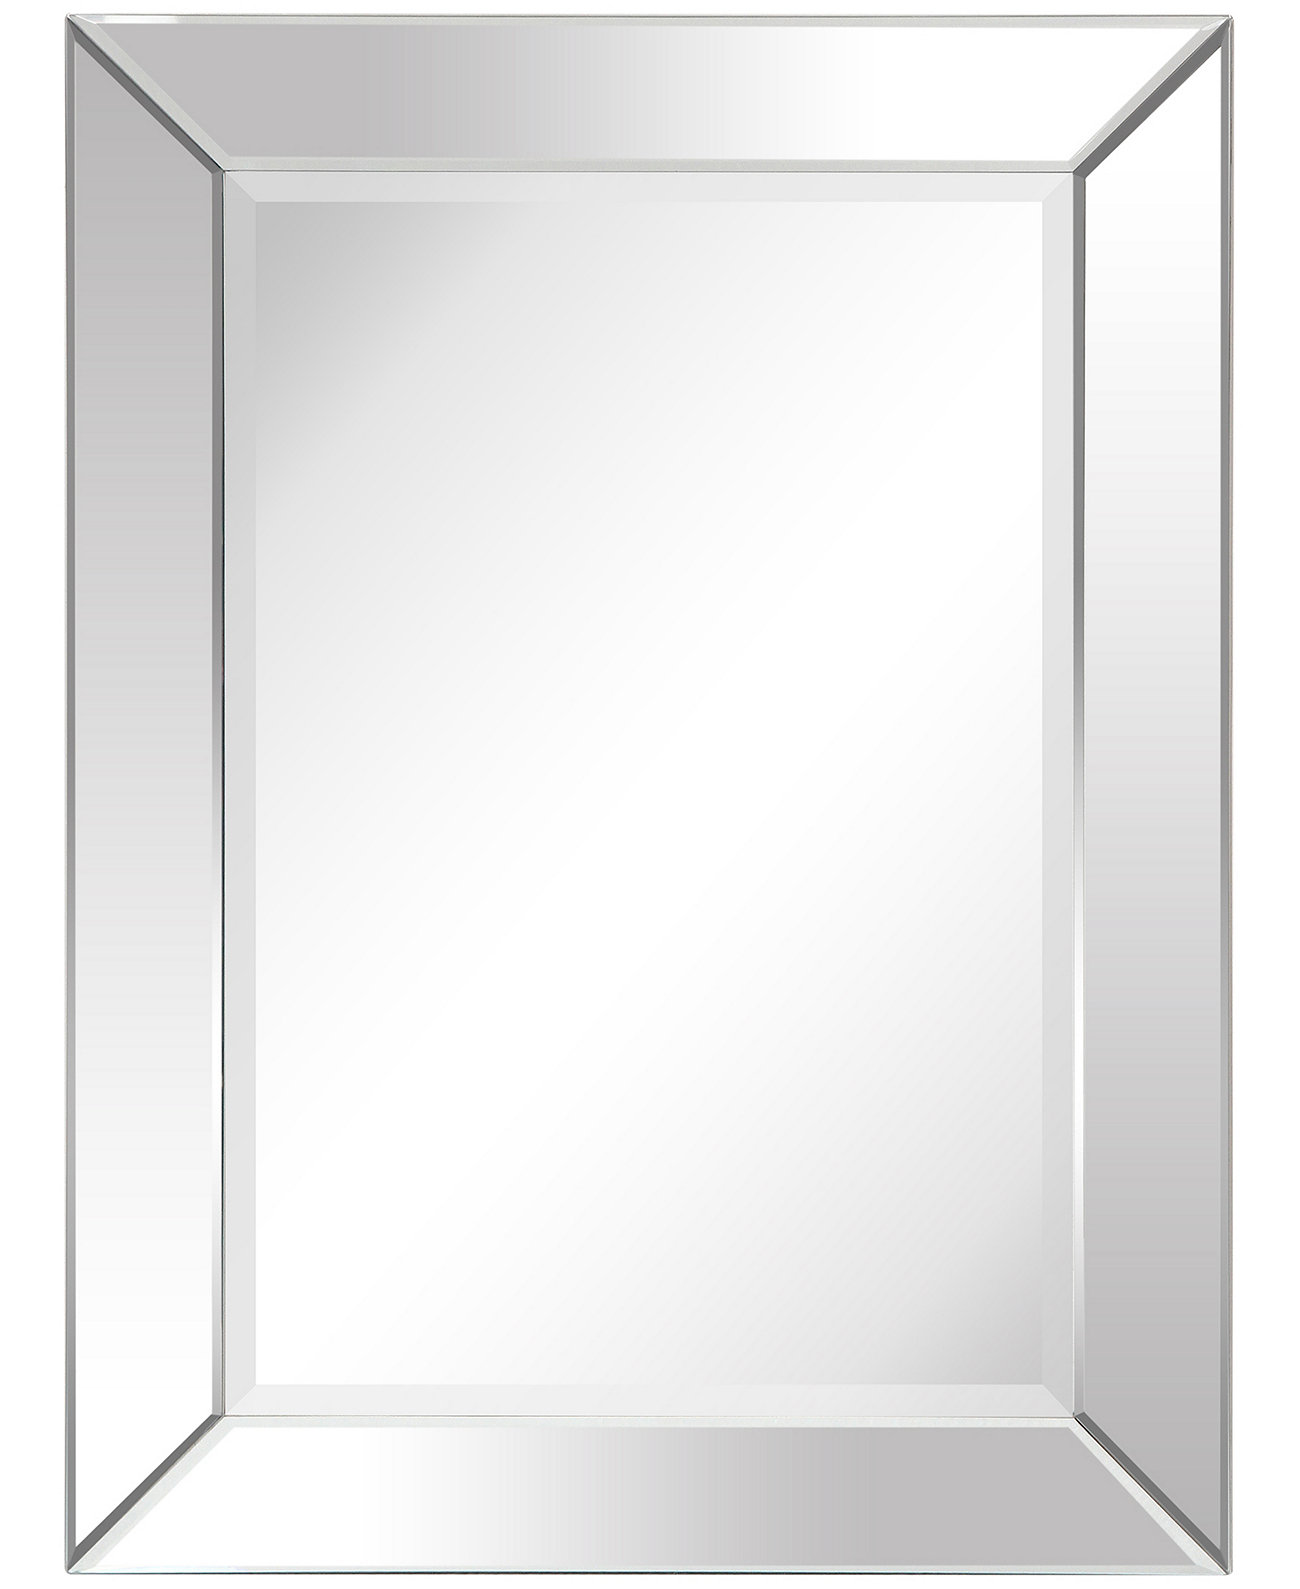 Рама из цельного дерева, покрытая прозрачным зеркалом со скошенной кромкой - 40 x 30 дюймов Empire Art Direct